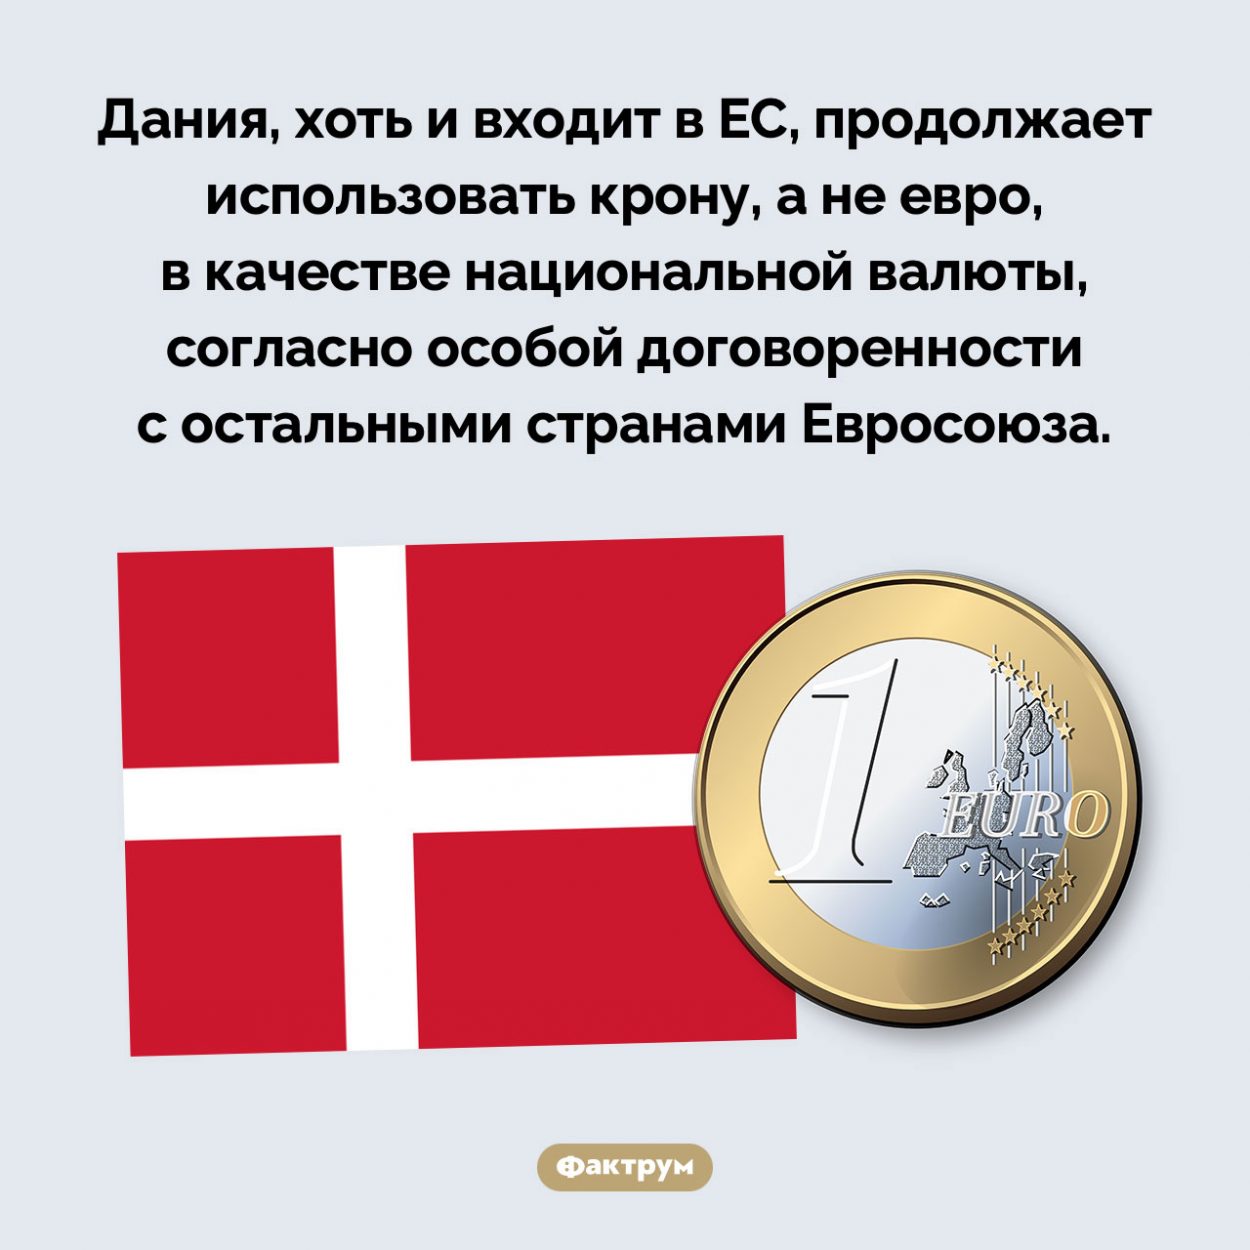 Дания не хочет использовать евро. Дания, хоть и входит в ЕС, продолжает использовать крону, а не евро, в качестве национальной валюты, согласно особой договоренности с остальными странами Евросоюза.